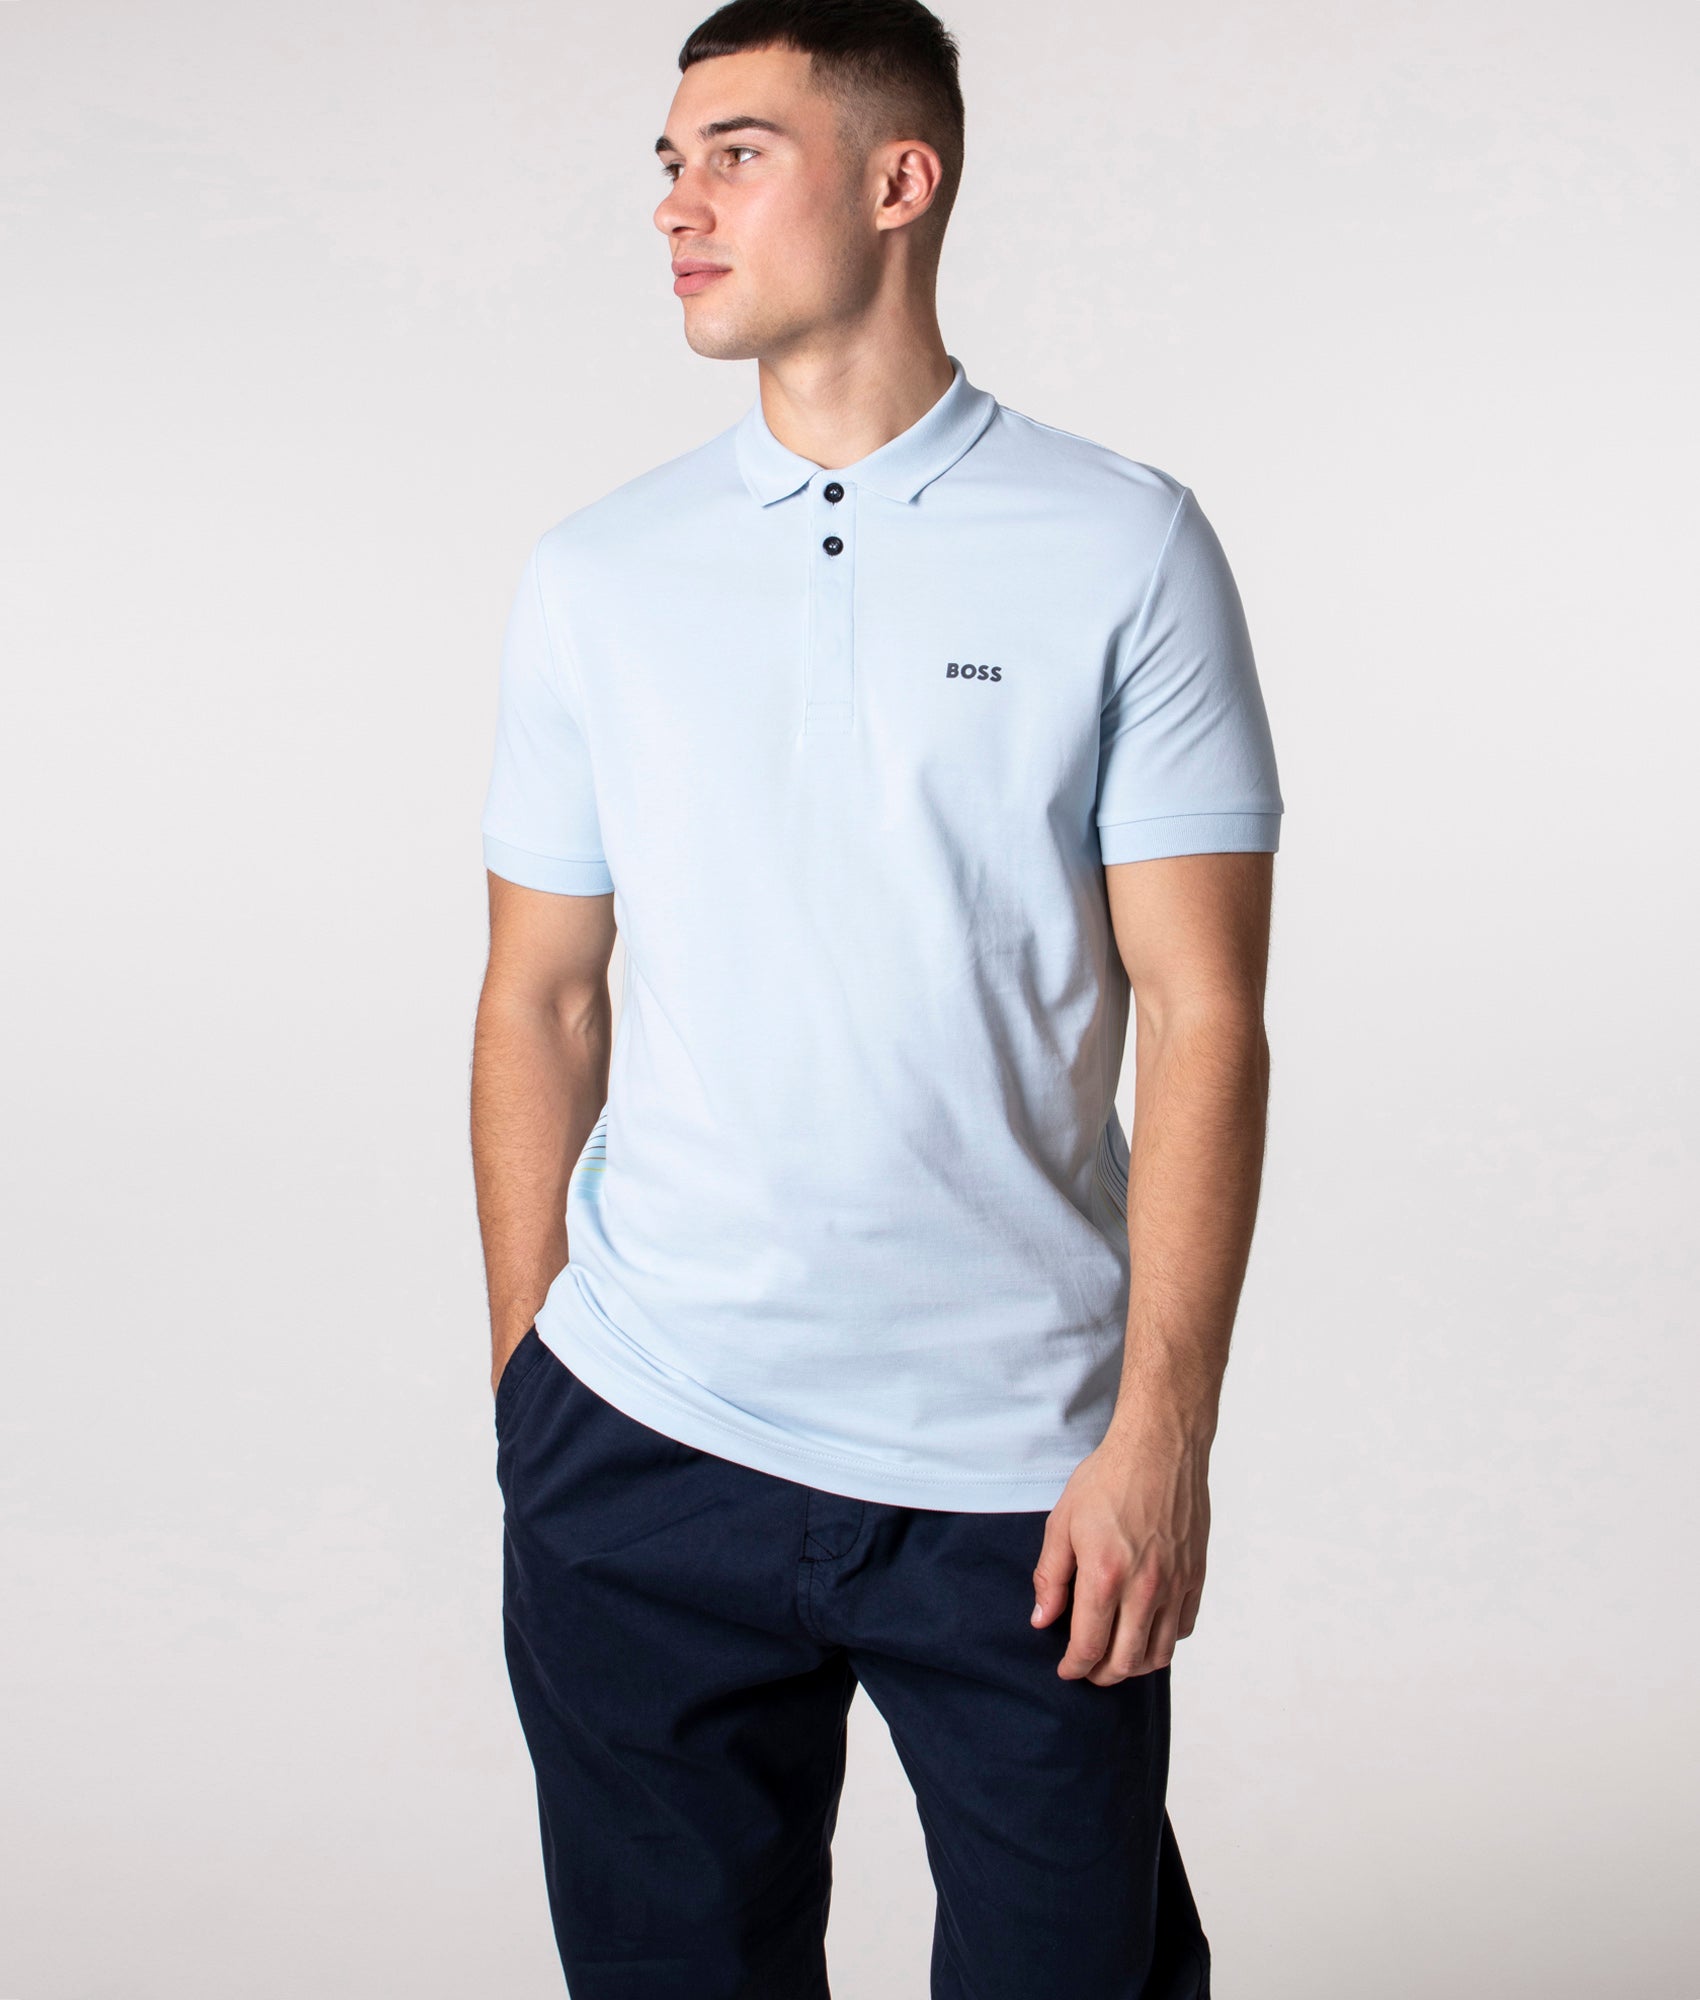 BOSS Mens Slim Fit Paule 2 Polo Shirt - Colour: 453 Light/Pastel Blue - Size: Large